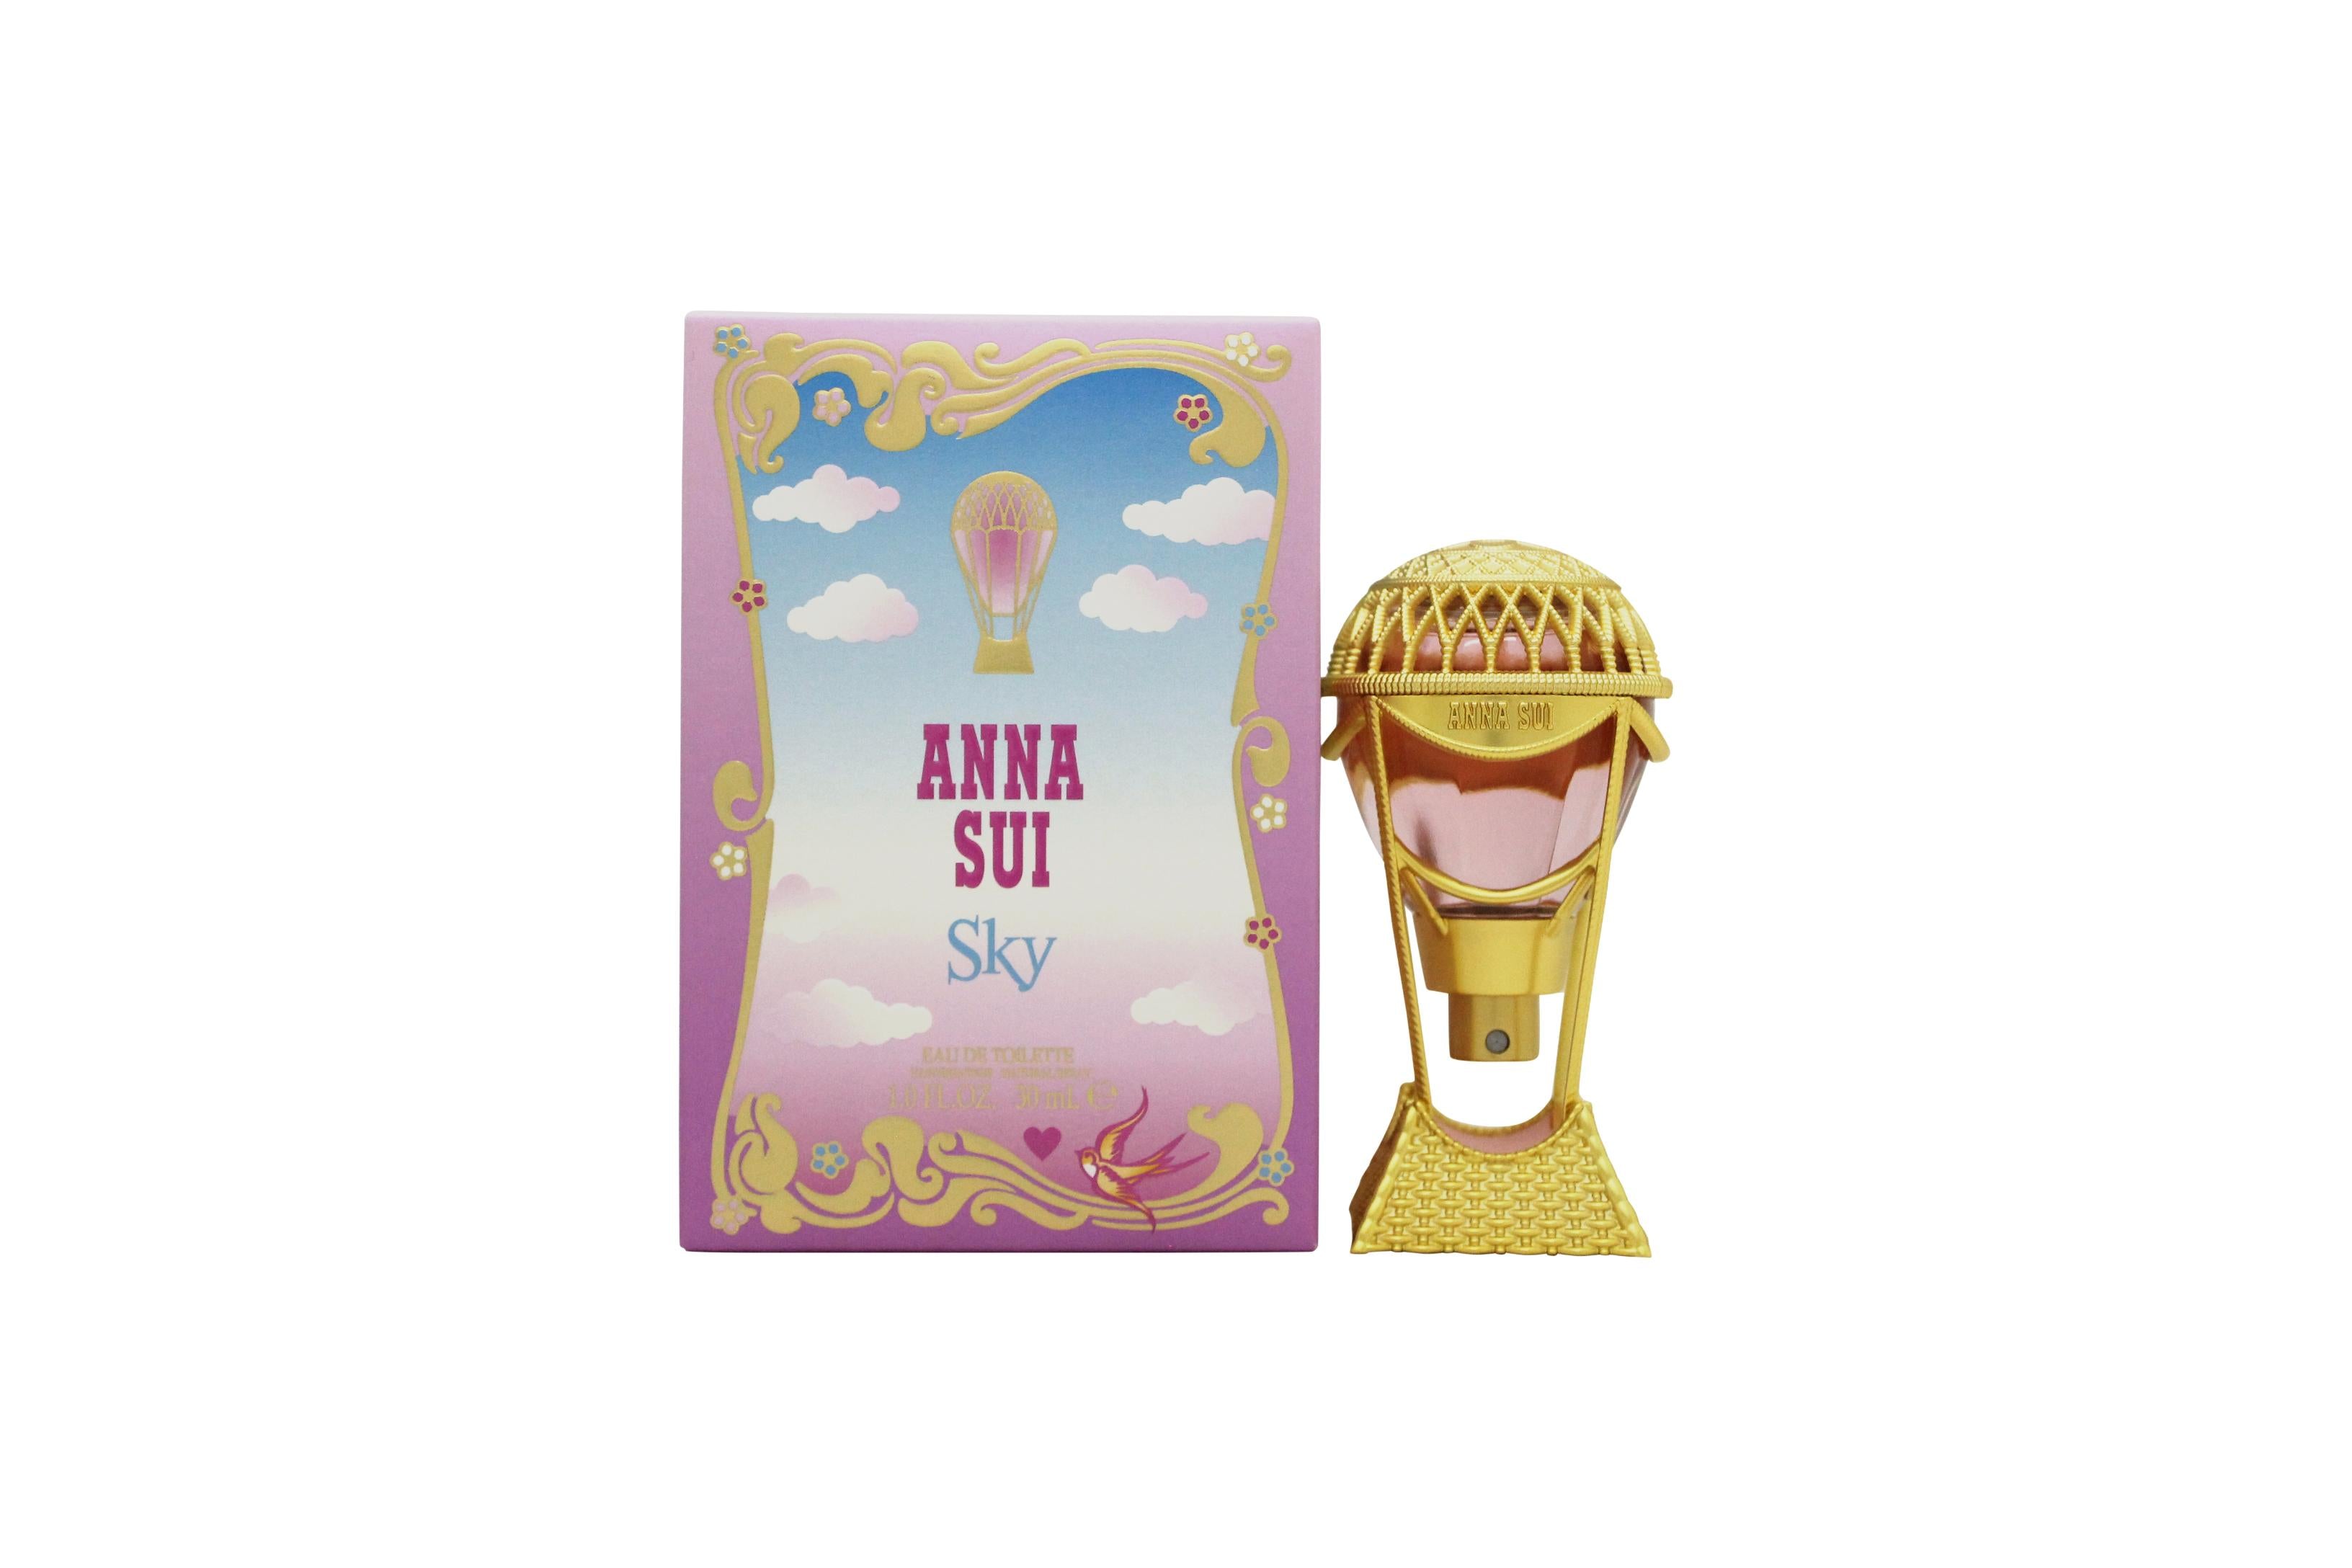 View Anna Sui Sky Eau de Toilette 30ml Spray information